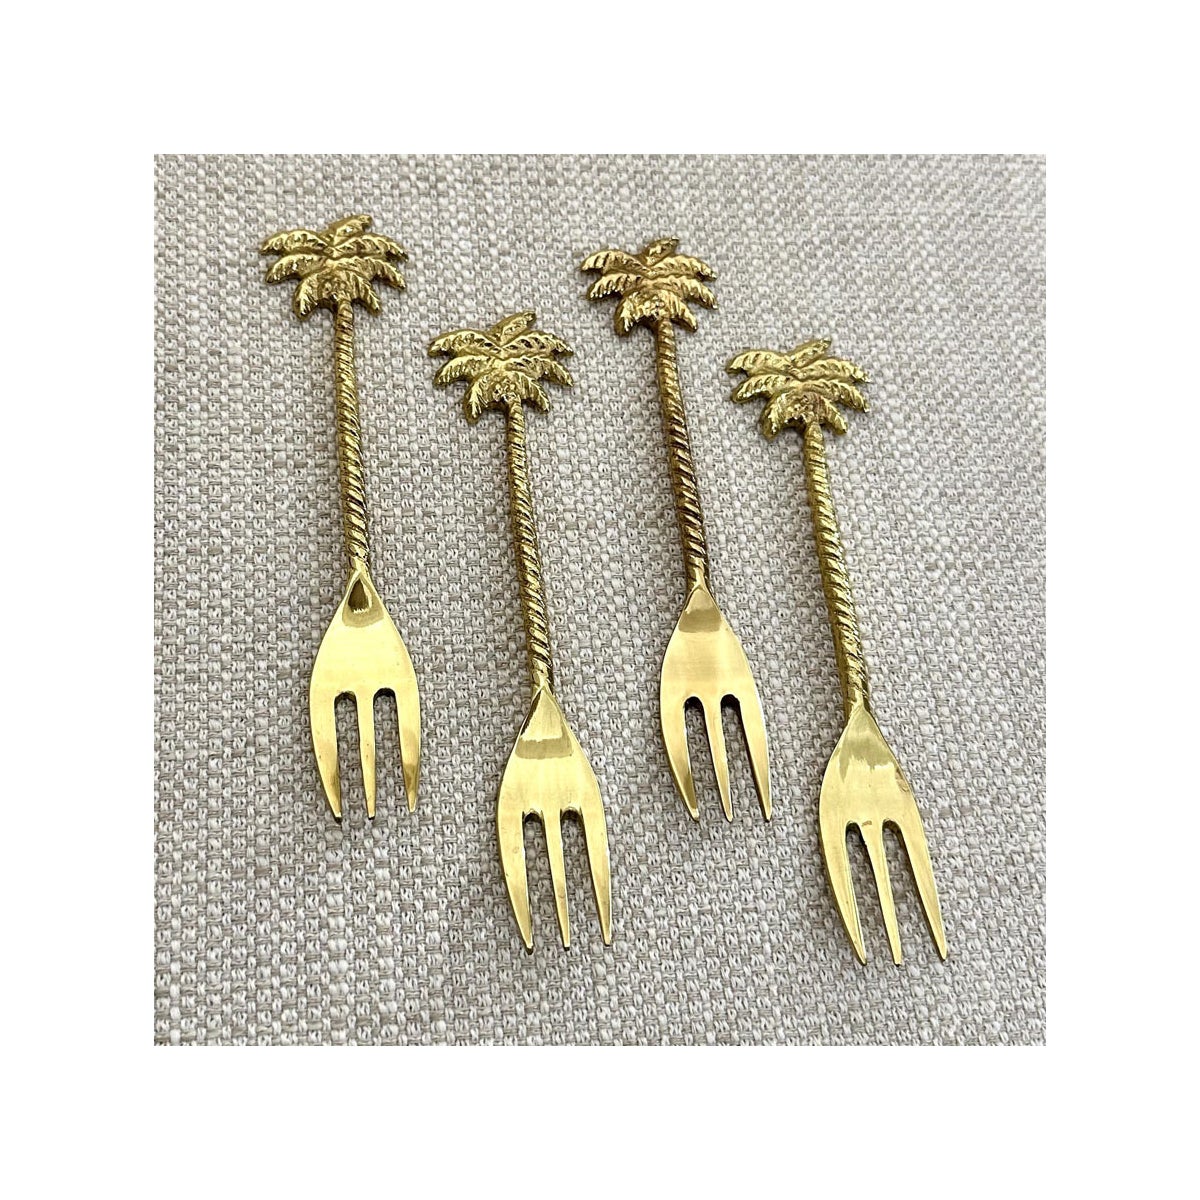 Gold Palm Tree Handles Dessert Forks Set of 4